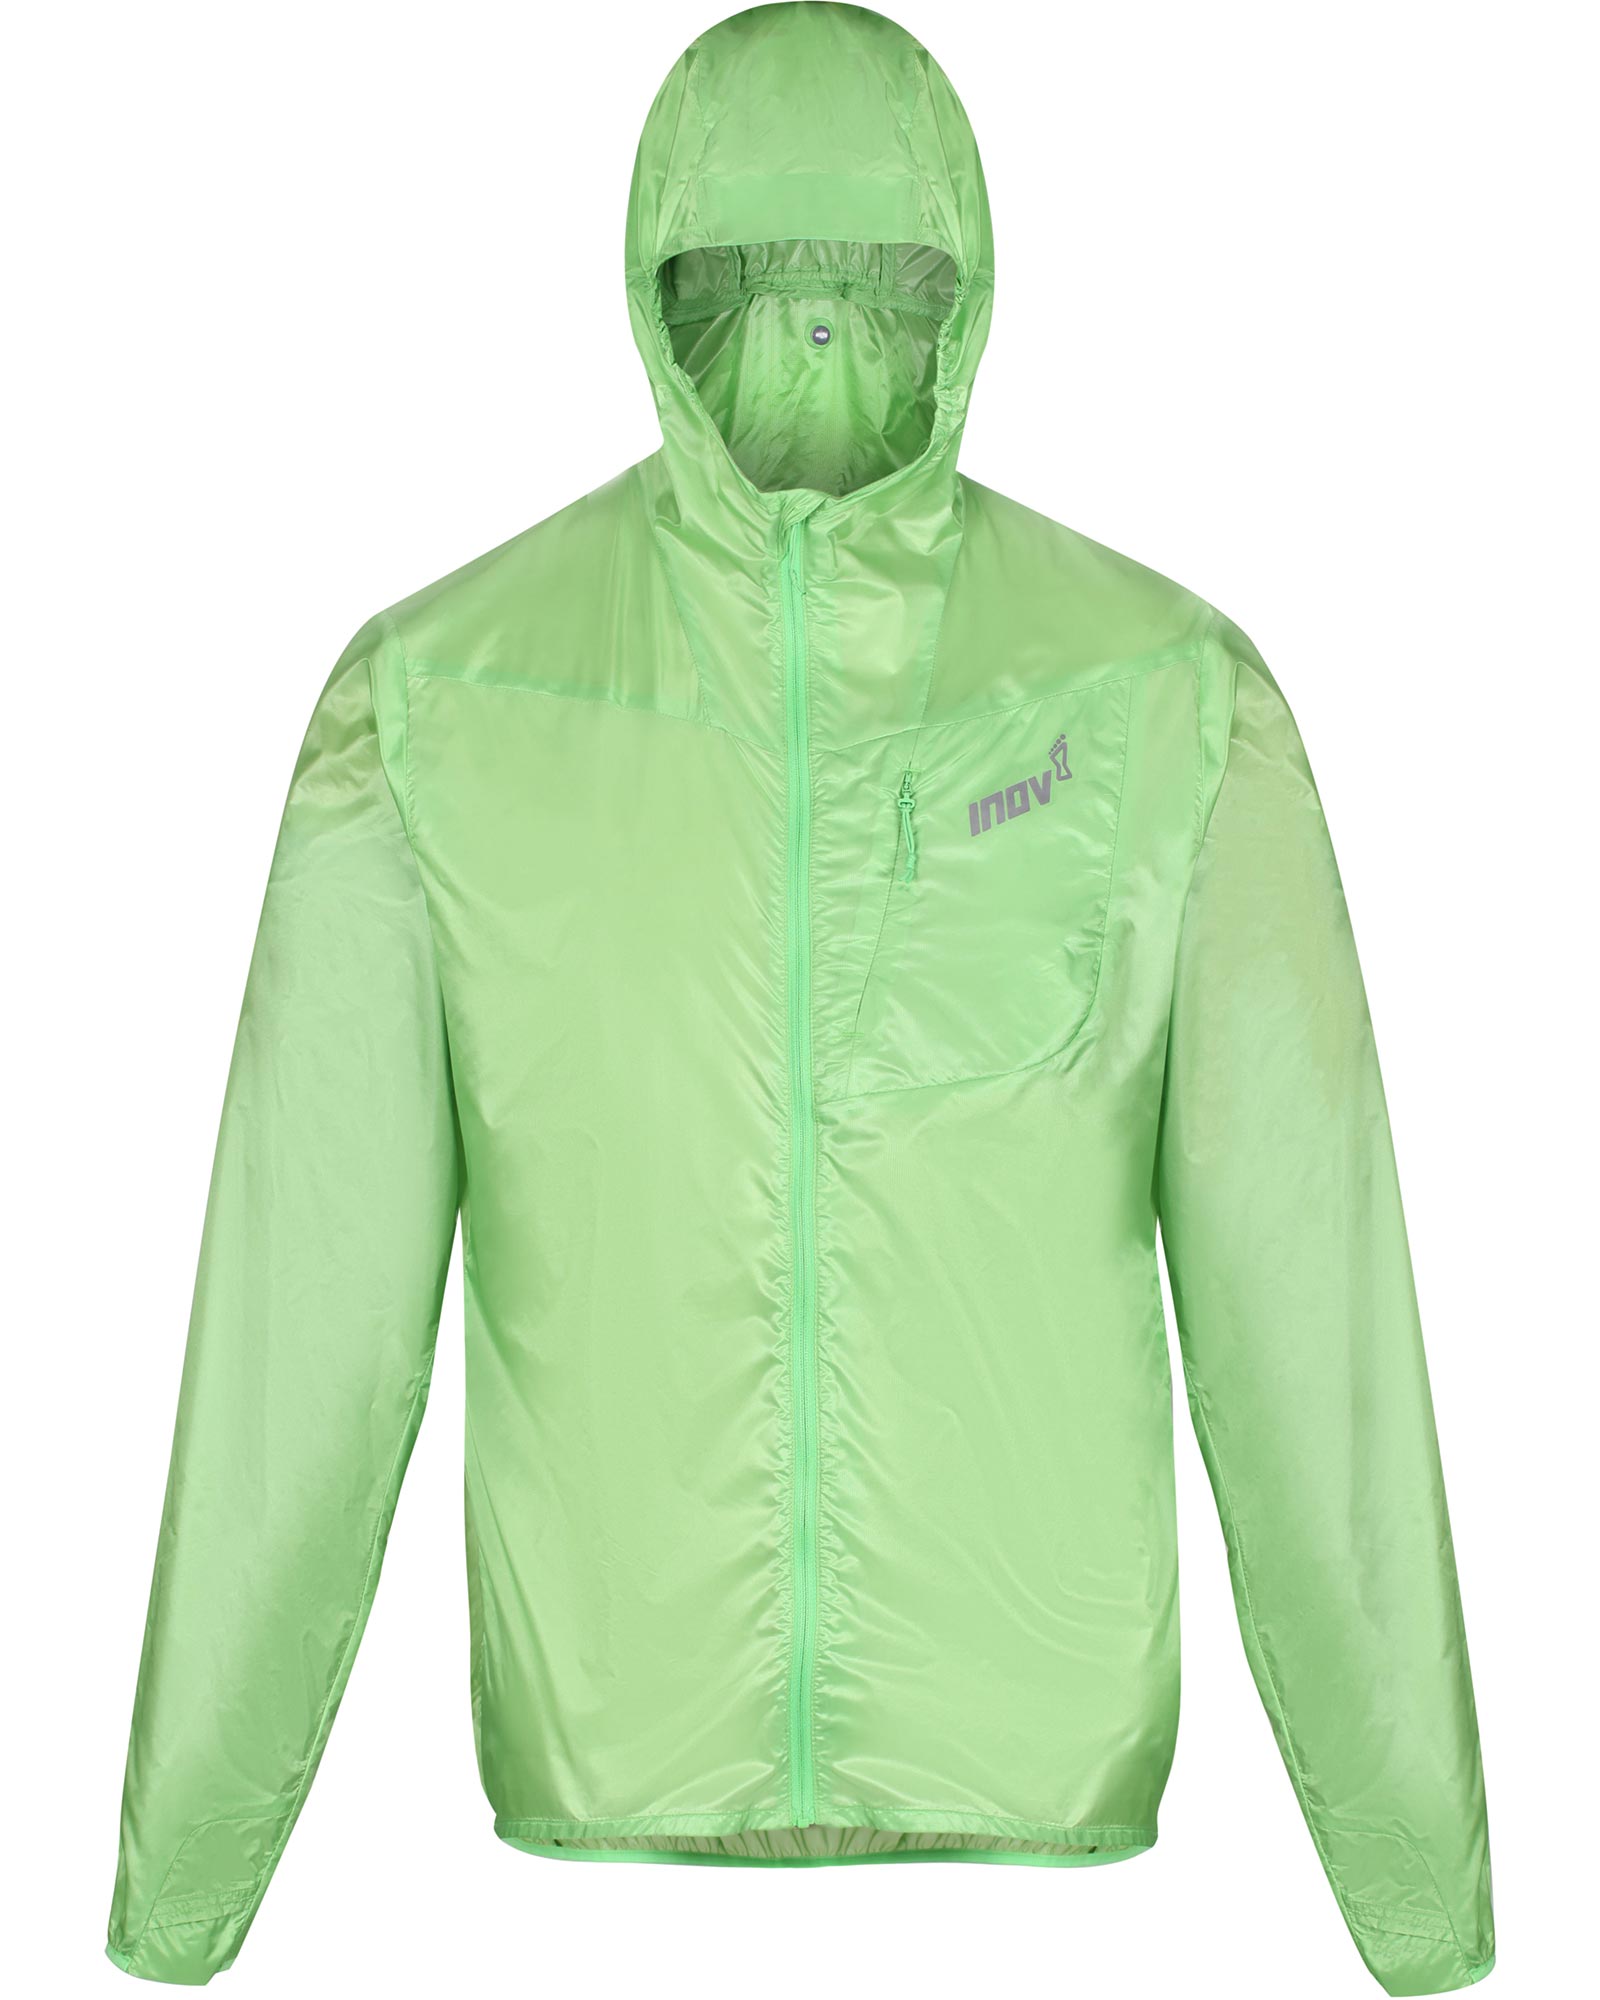 Inov 8 Men’s Full Zip Windshell Jacket - Green S